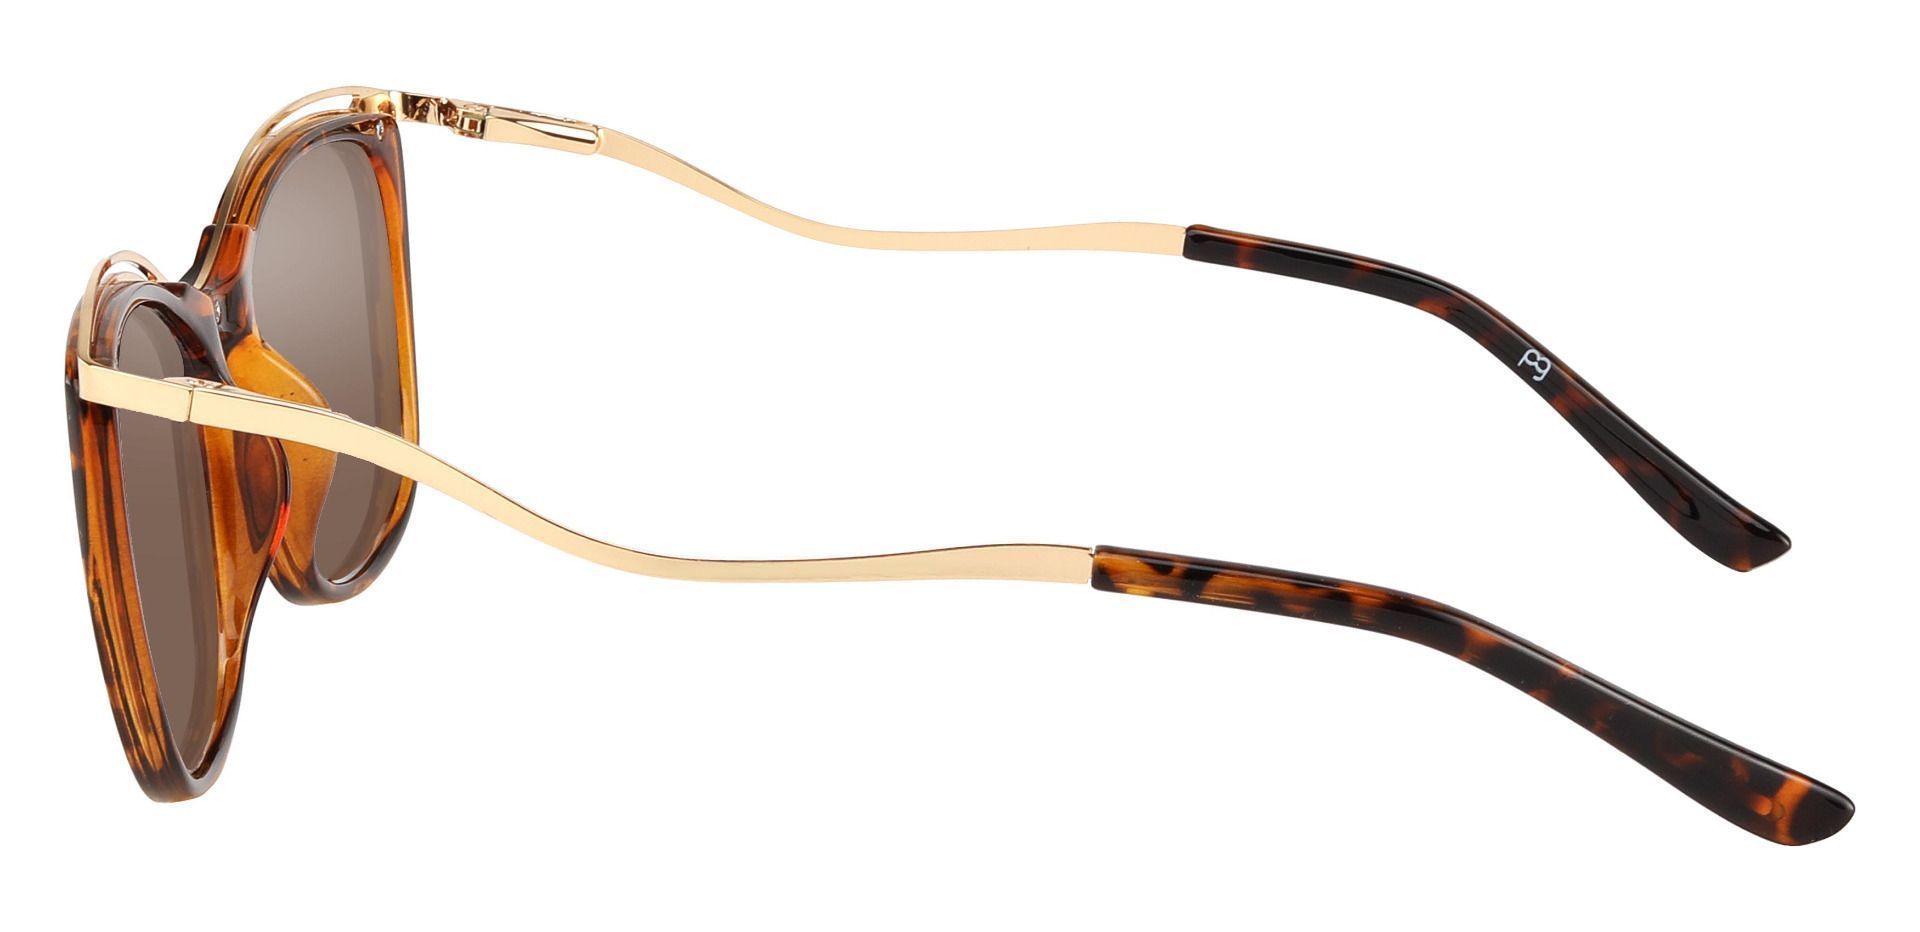 Enola Cat Eye Prescription Sunglasses - Tortoise Frame With Brown Lenses